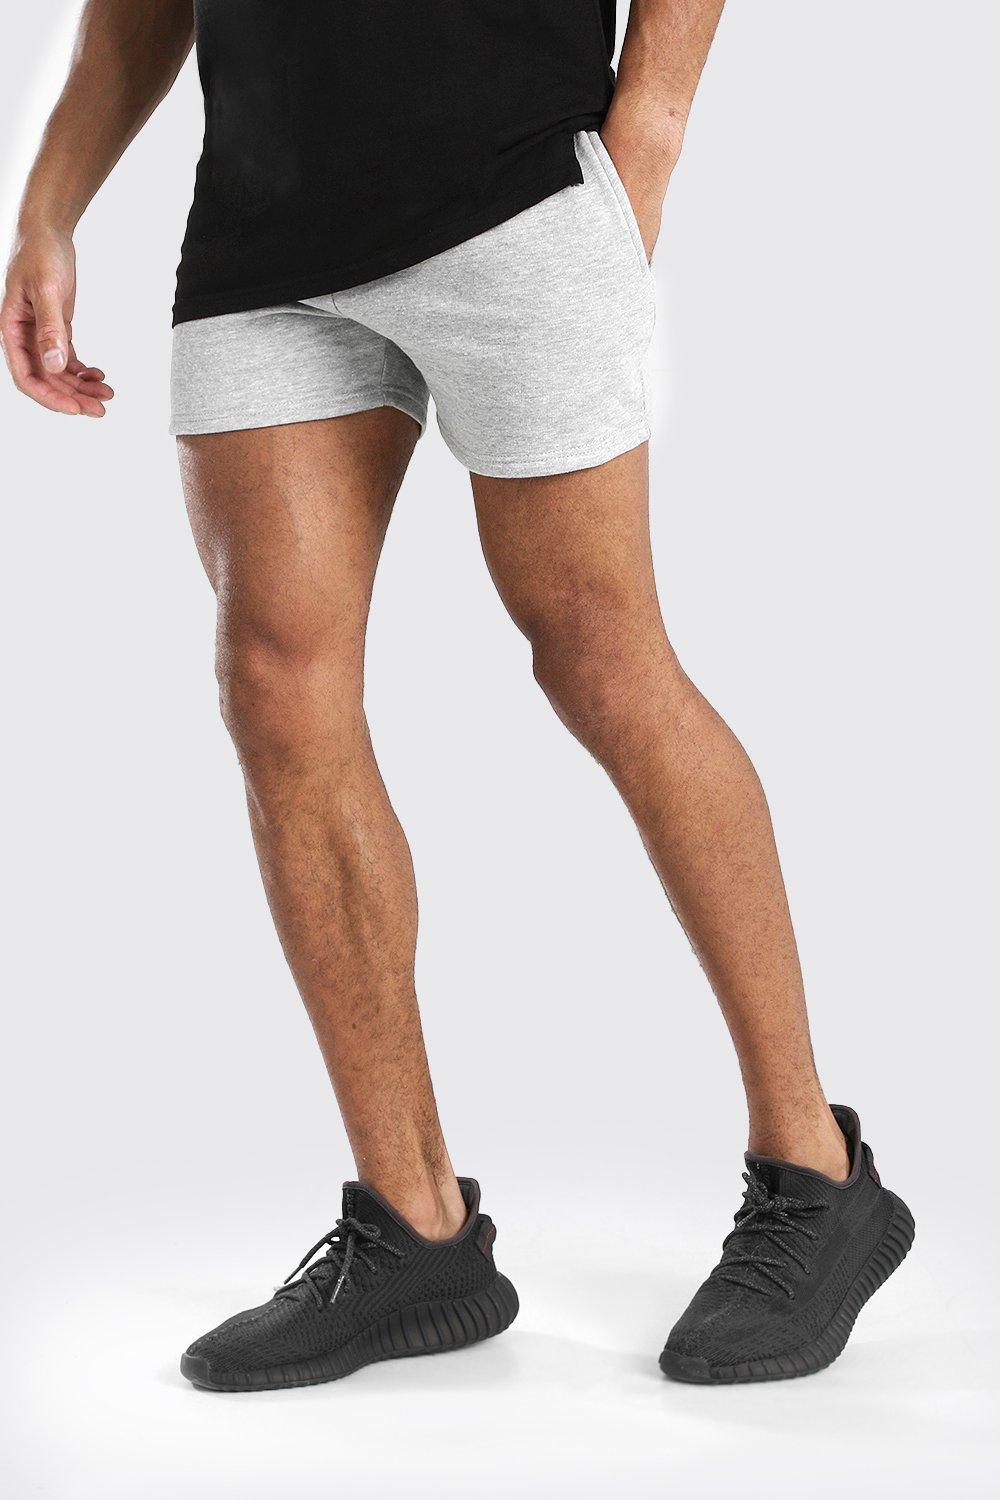 mens denim short shorts